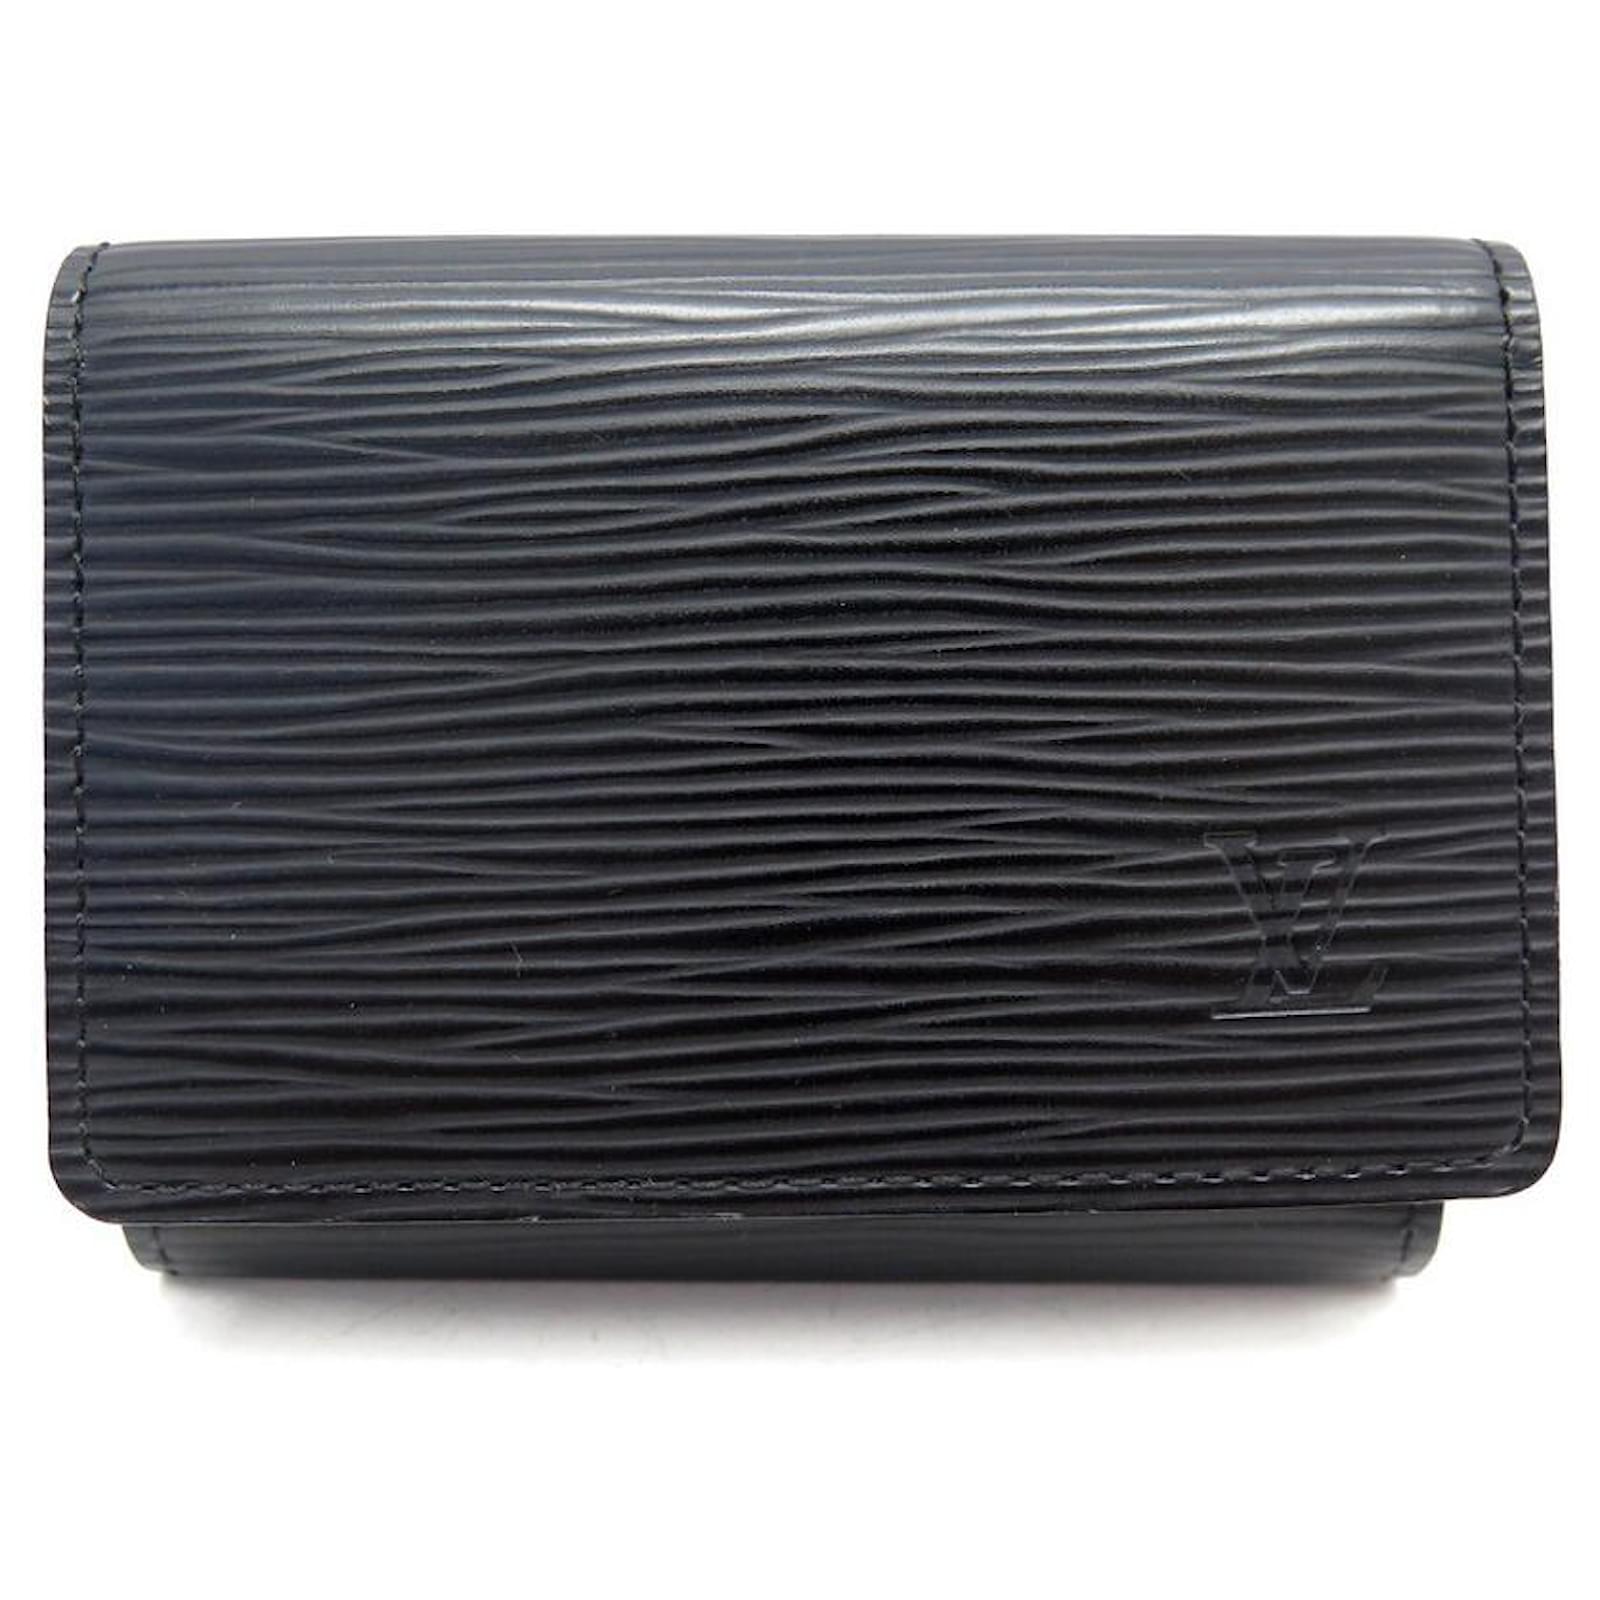 Louis Vuitton, Bags, Louis Vuitton Epi Leather Card Holder Wallet